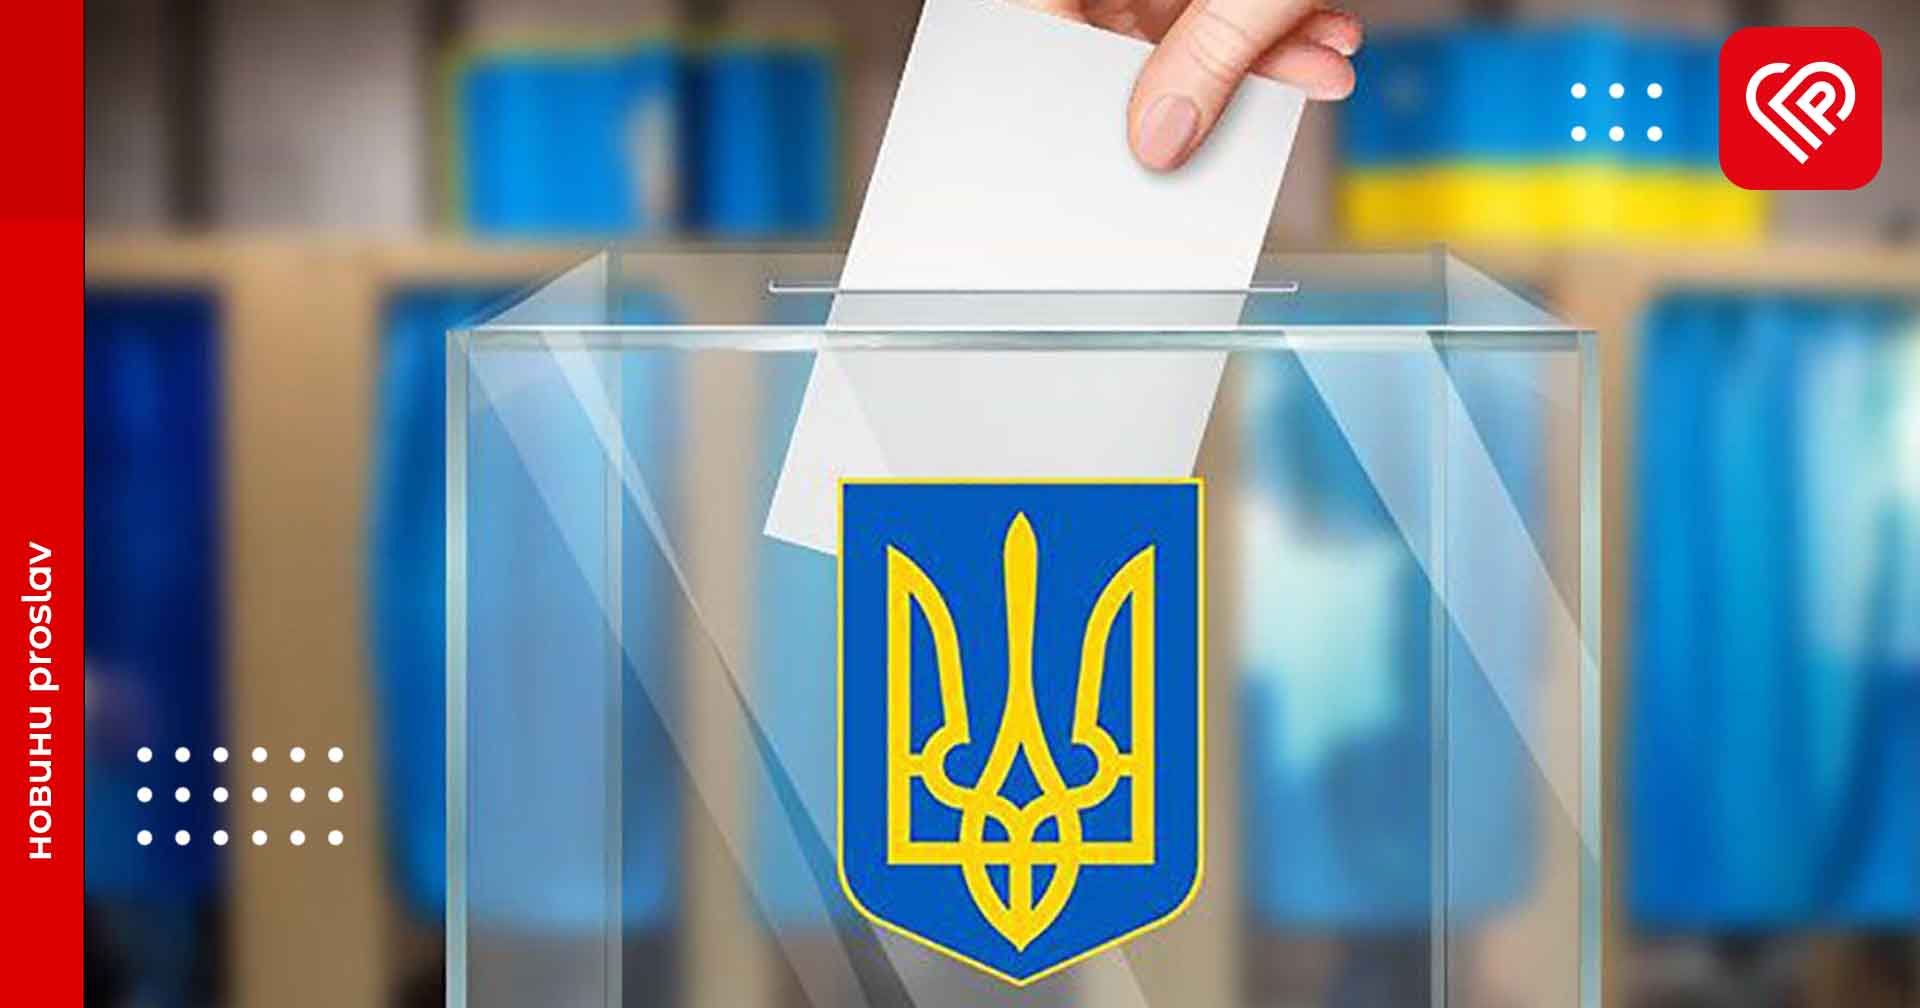 Вибори в Україні відбудуться, як тільки цьому сприятимуть умови – Центр стратегічних комунікацій